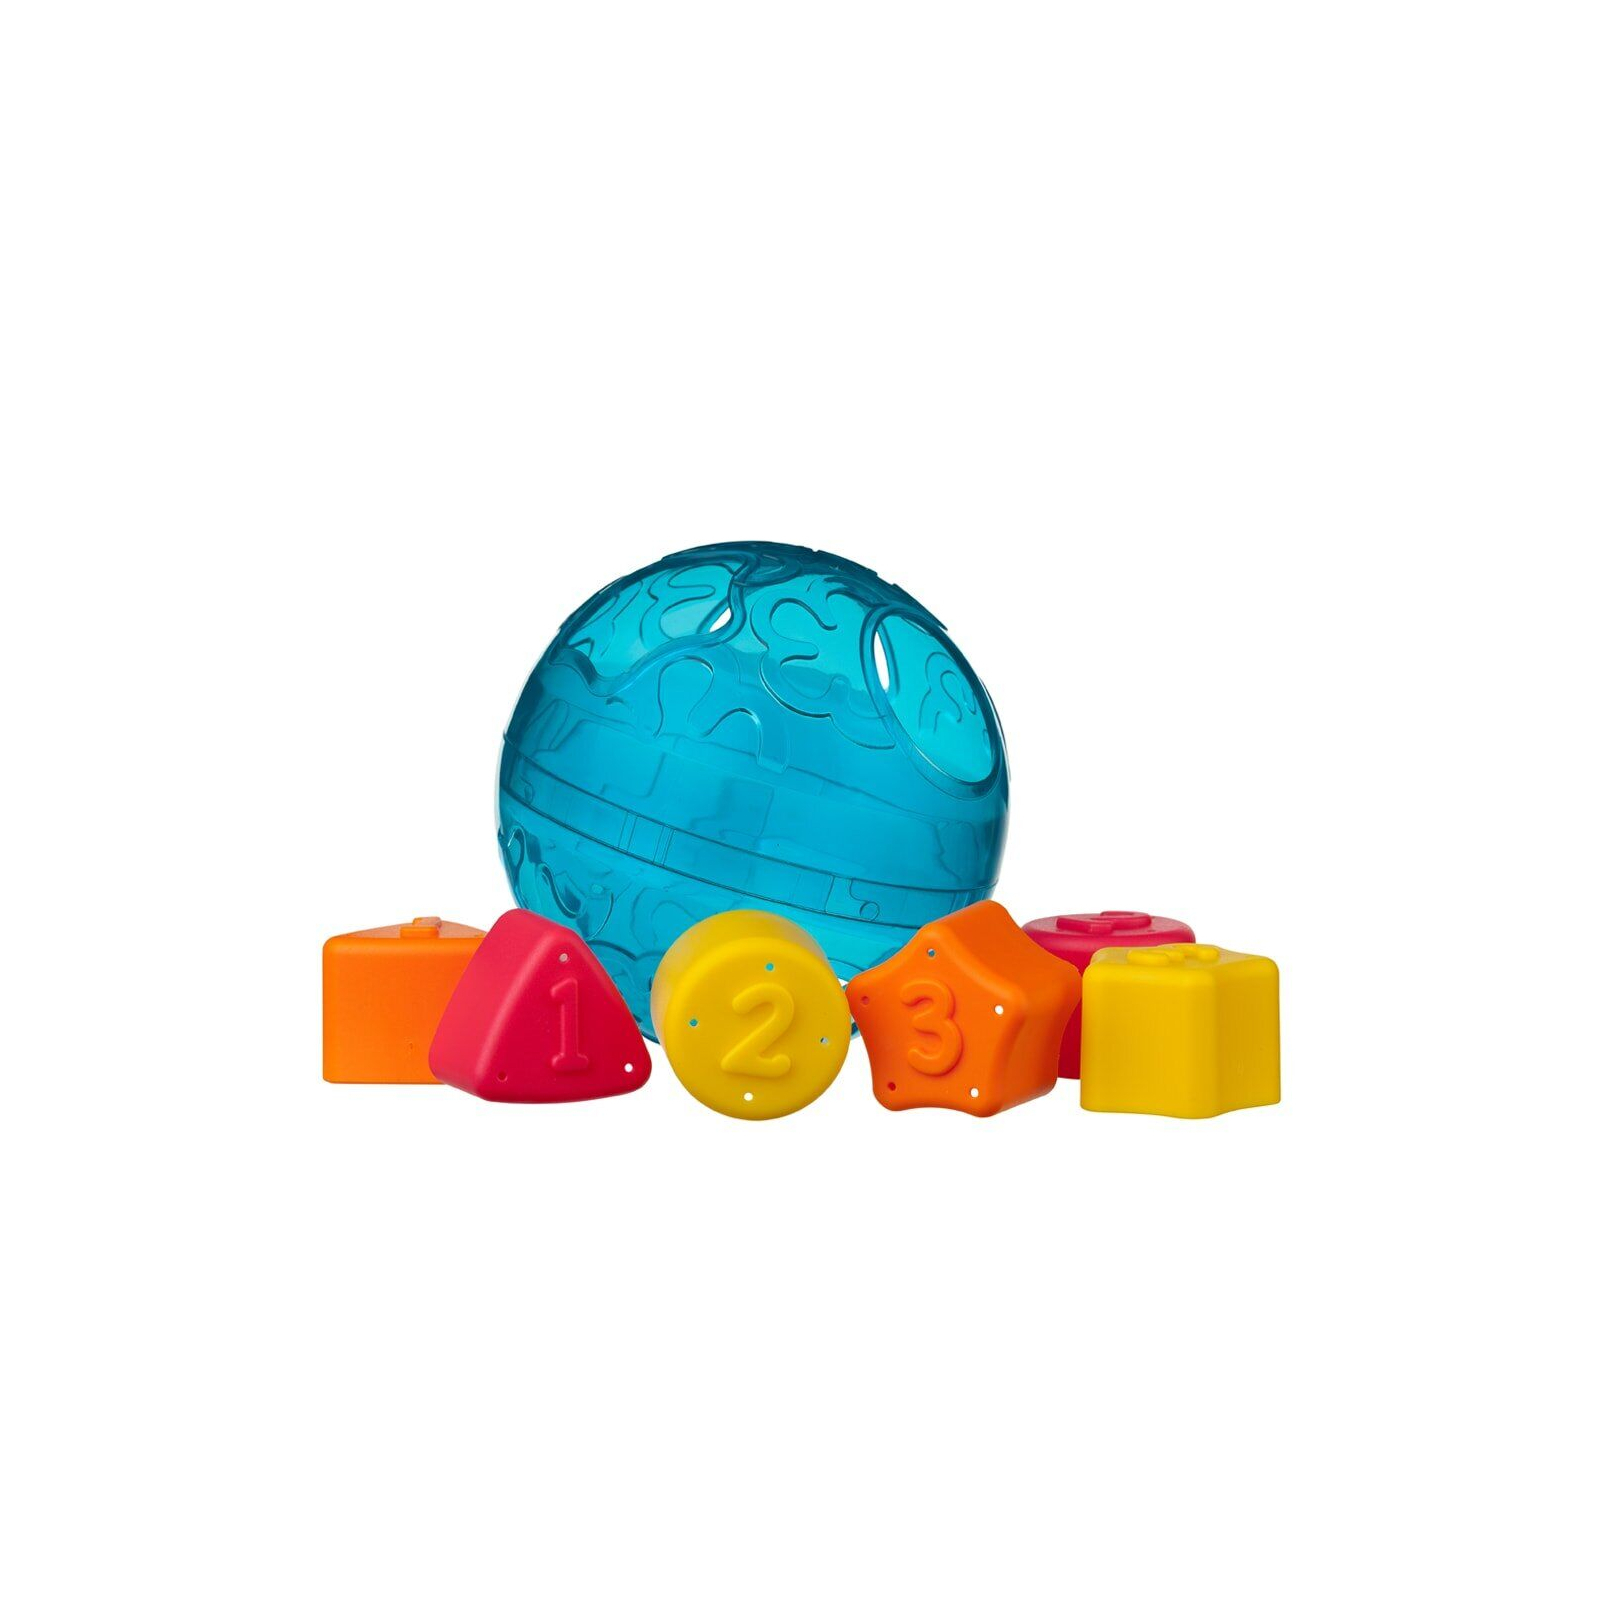 Развивающая игрушка Playgro Мячик-сортер (25234)